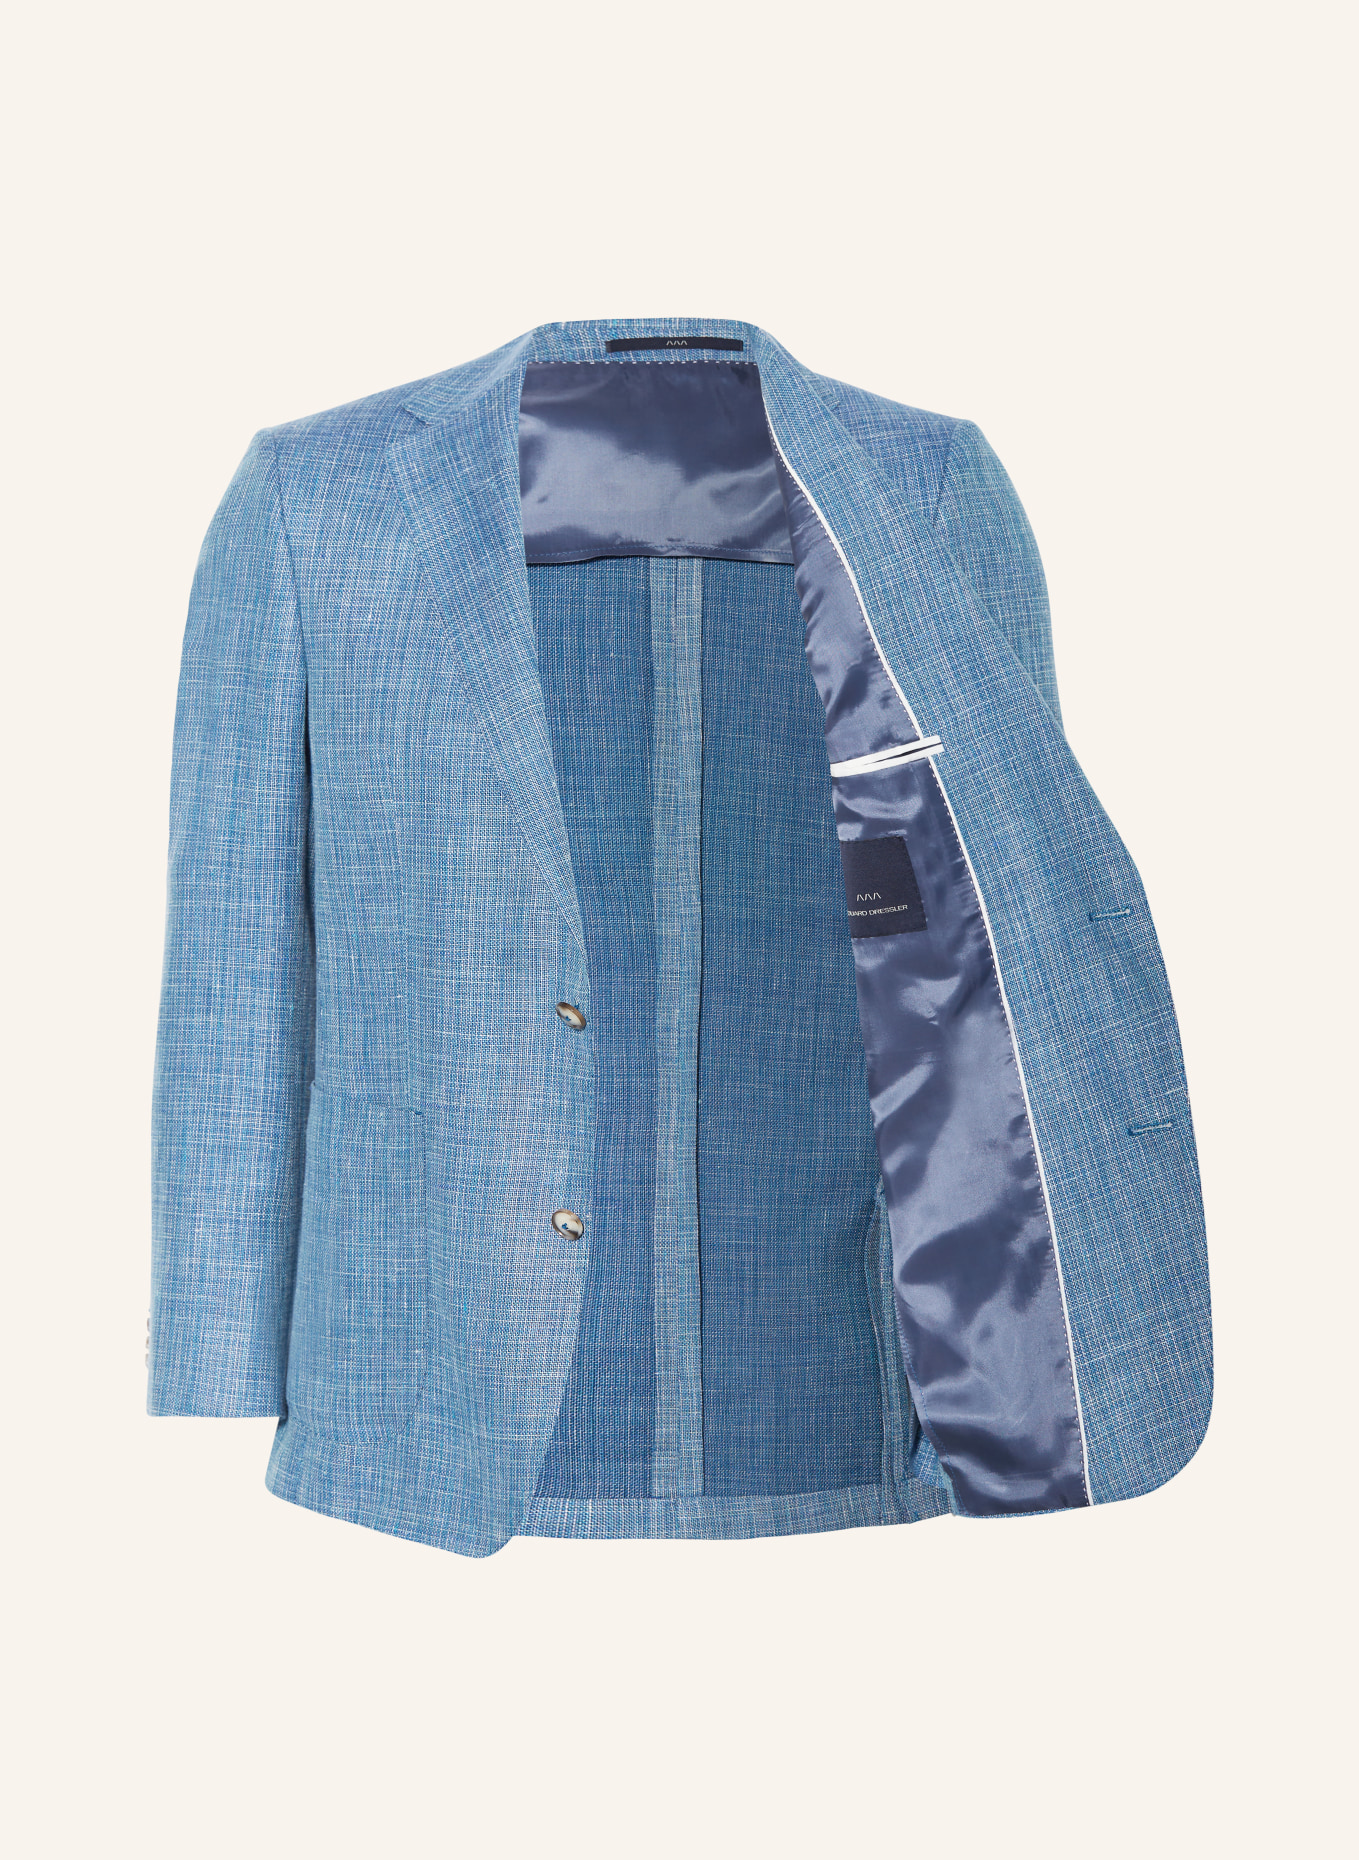 EDUARD DRESSLER Tailored jacket MATTEO comfort fit with linen, Color: 039 HELLBLAU (Image 4)